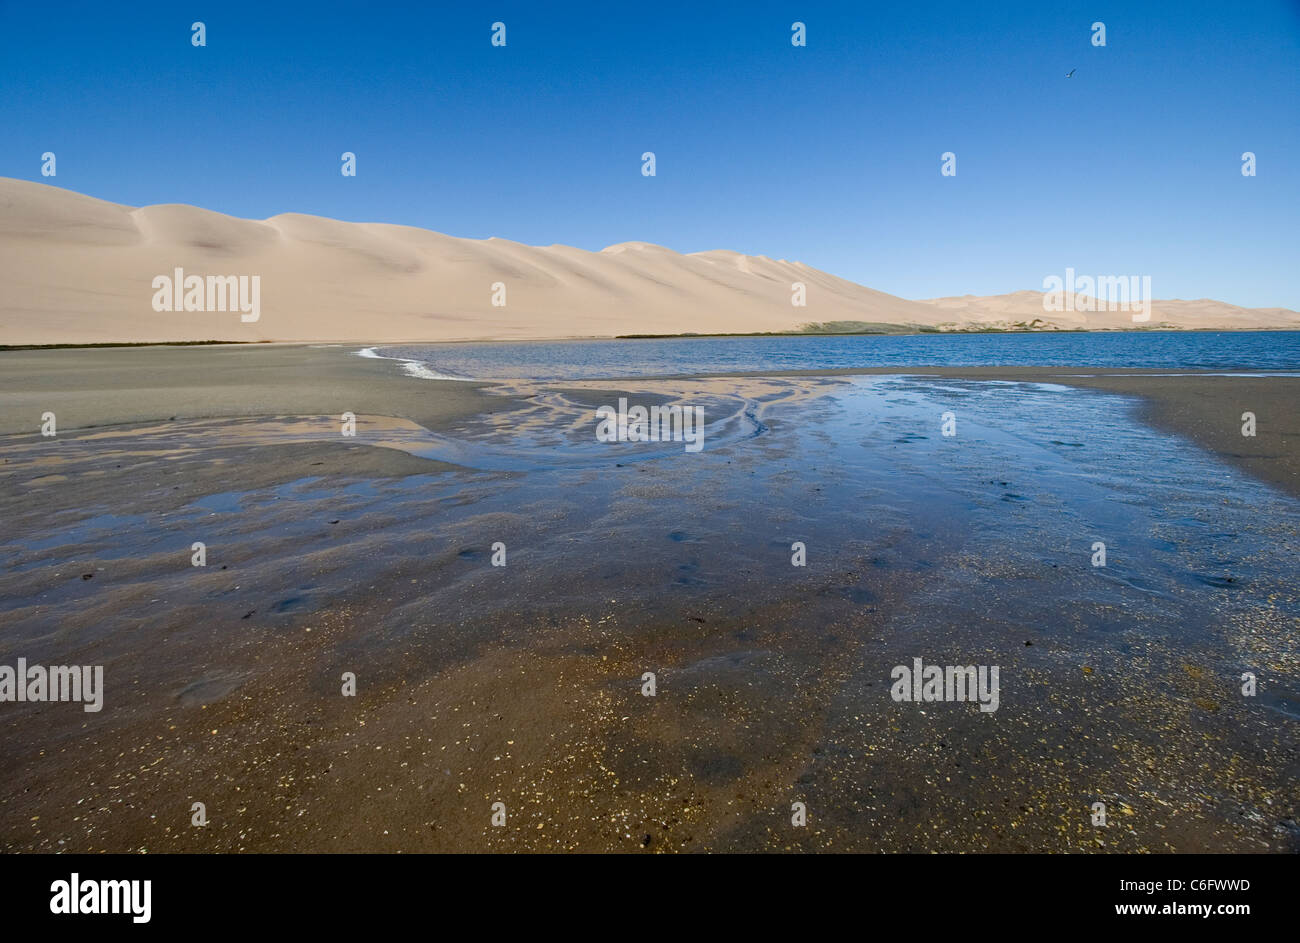 Namib desert dunes on the edge of Altantic ocean Stock Photo